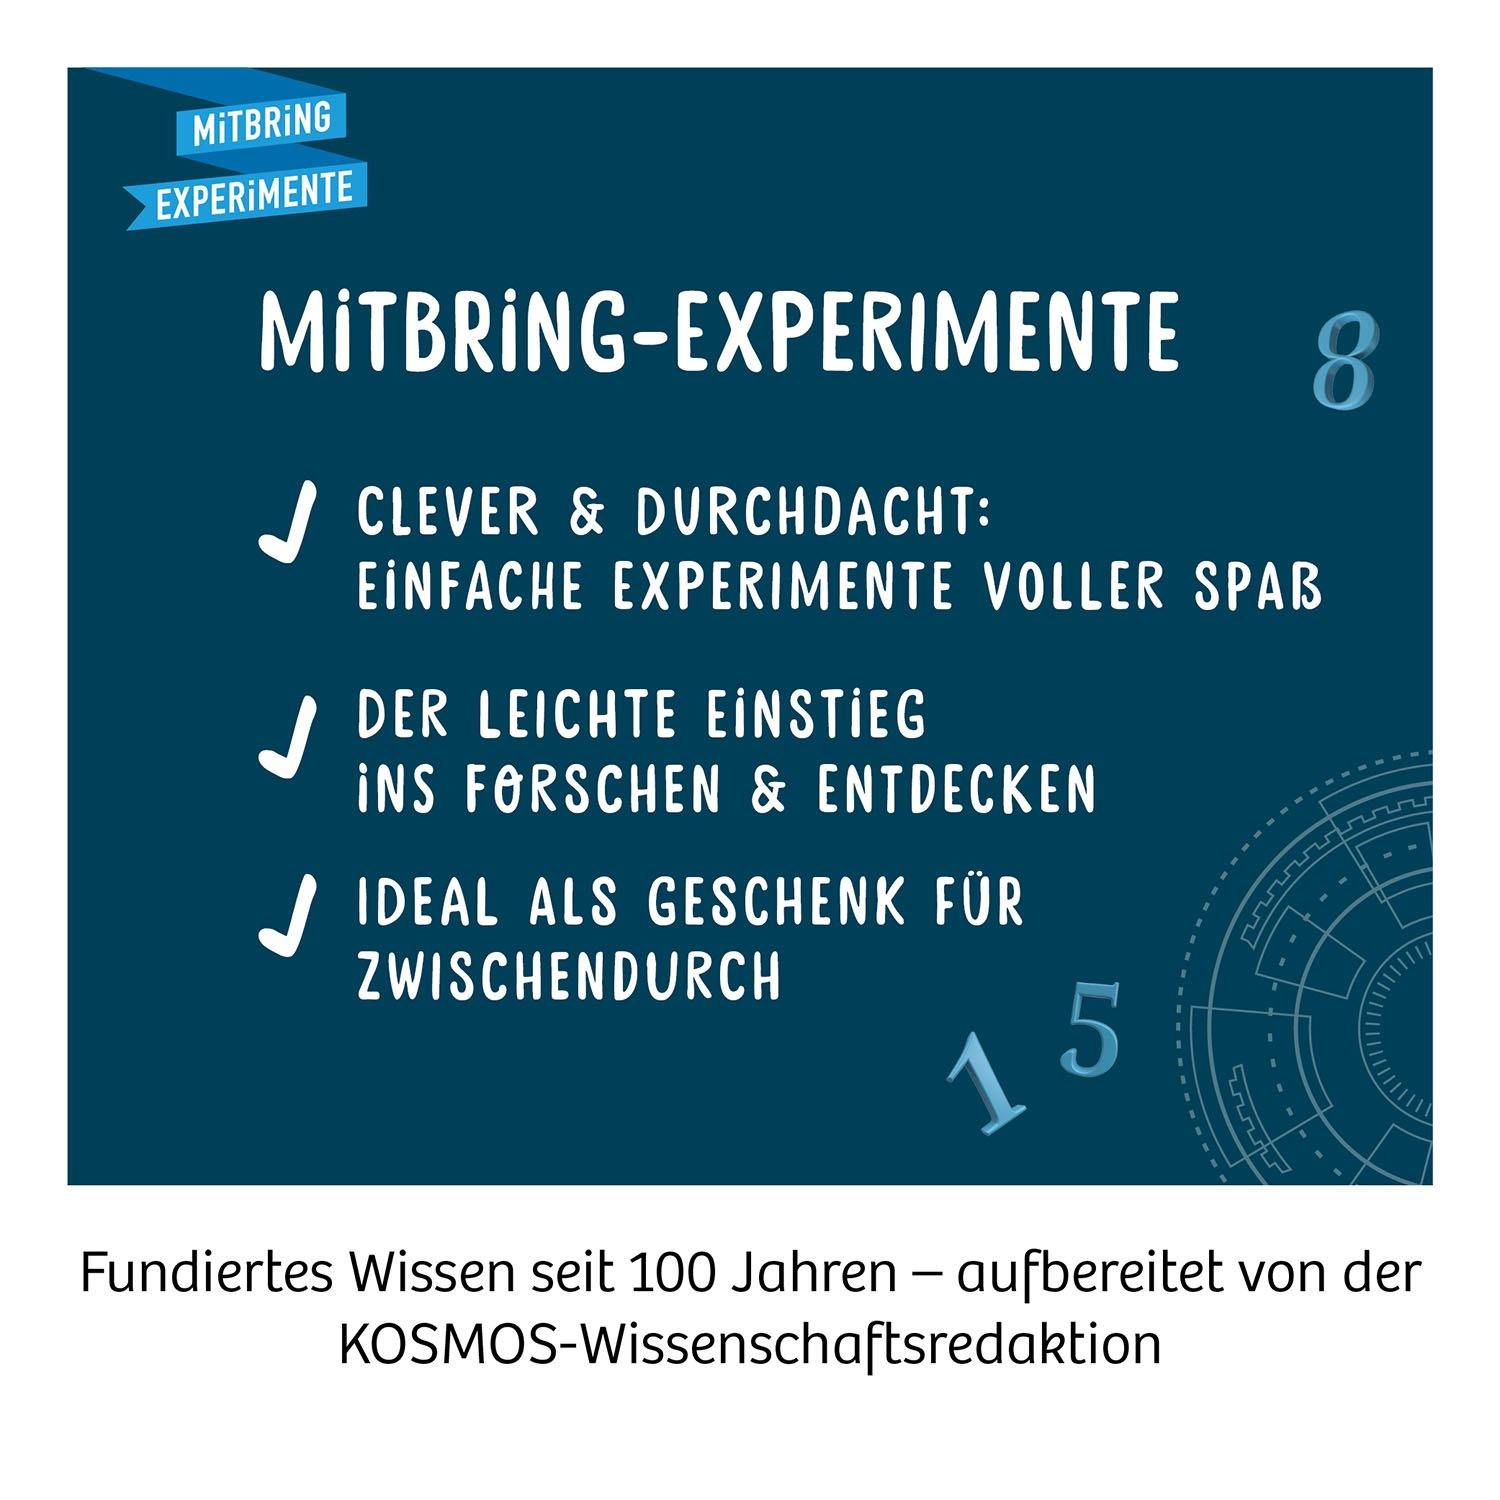 Mitbring Experiment: Geheim-Codes - www. kunstundspiel .de 4002051658076